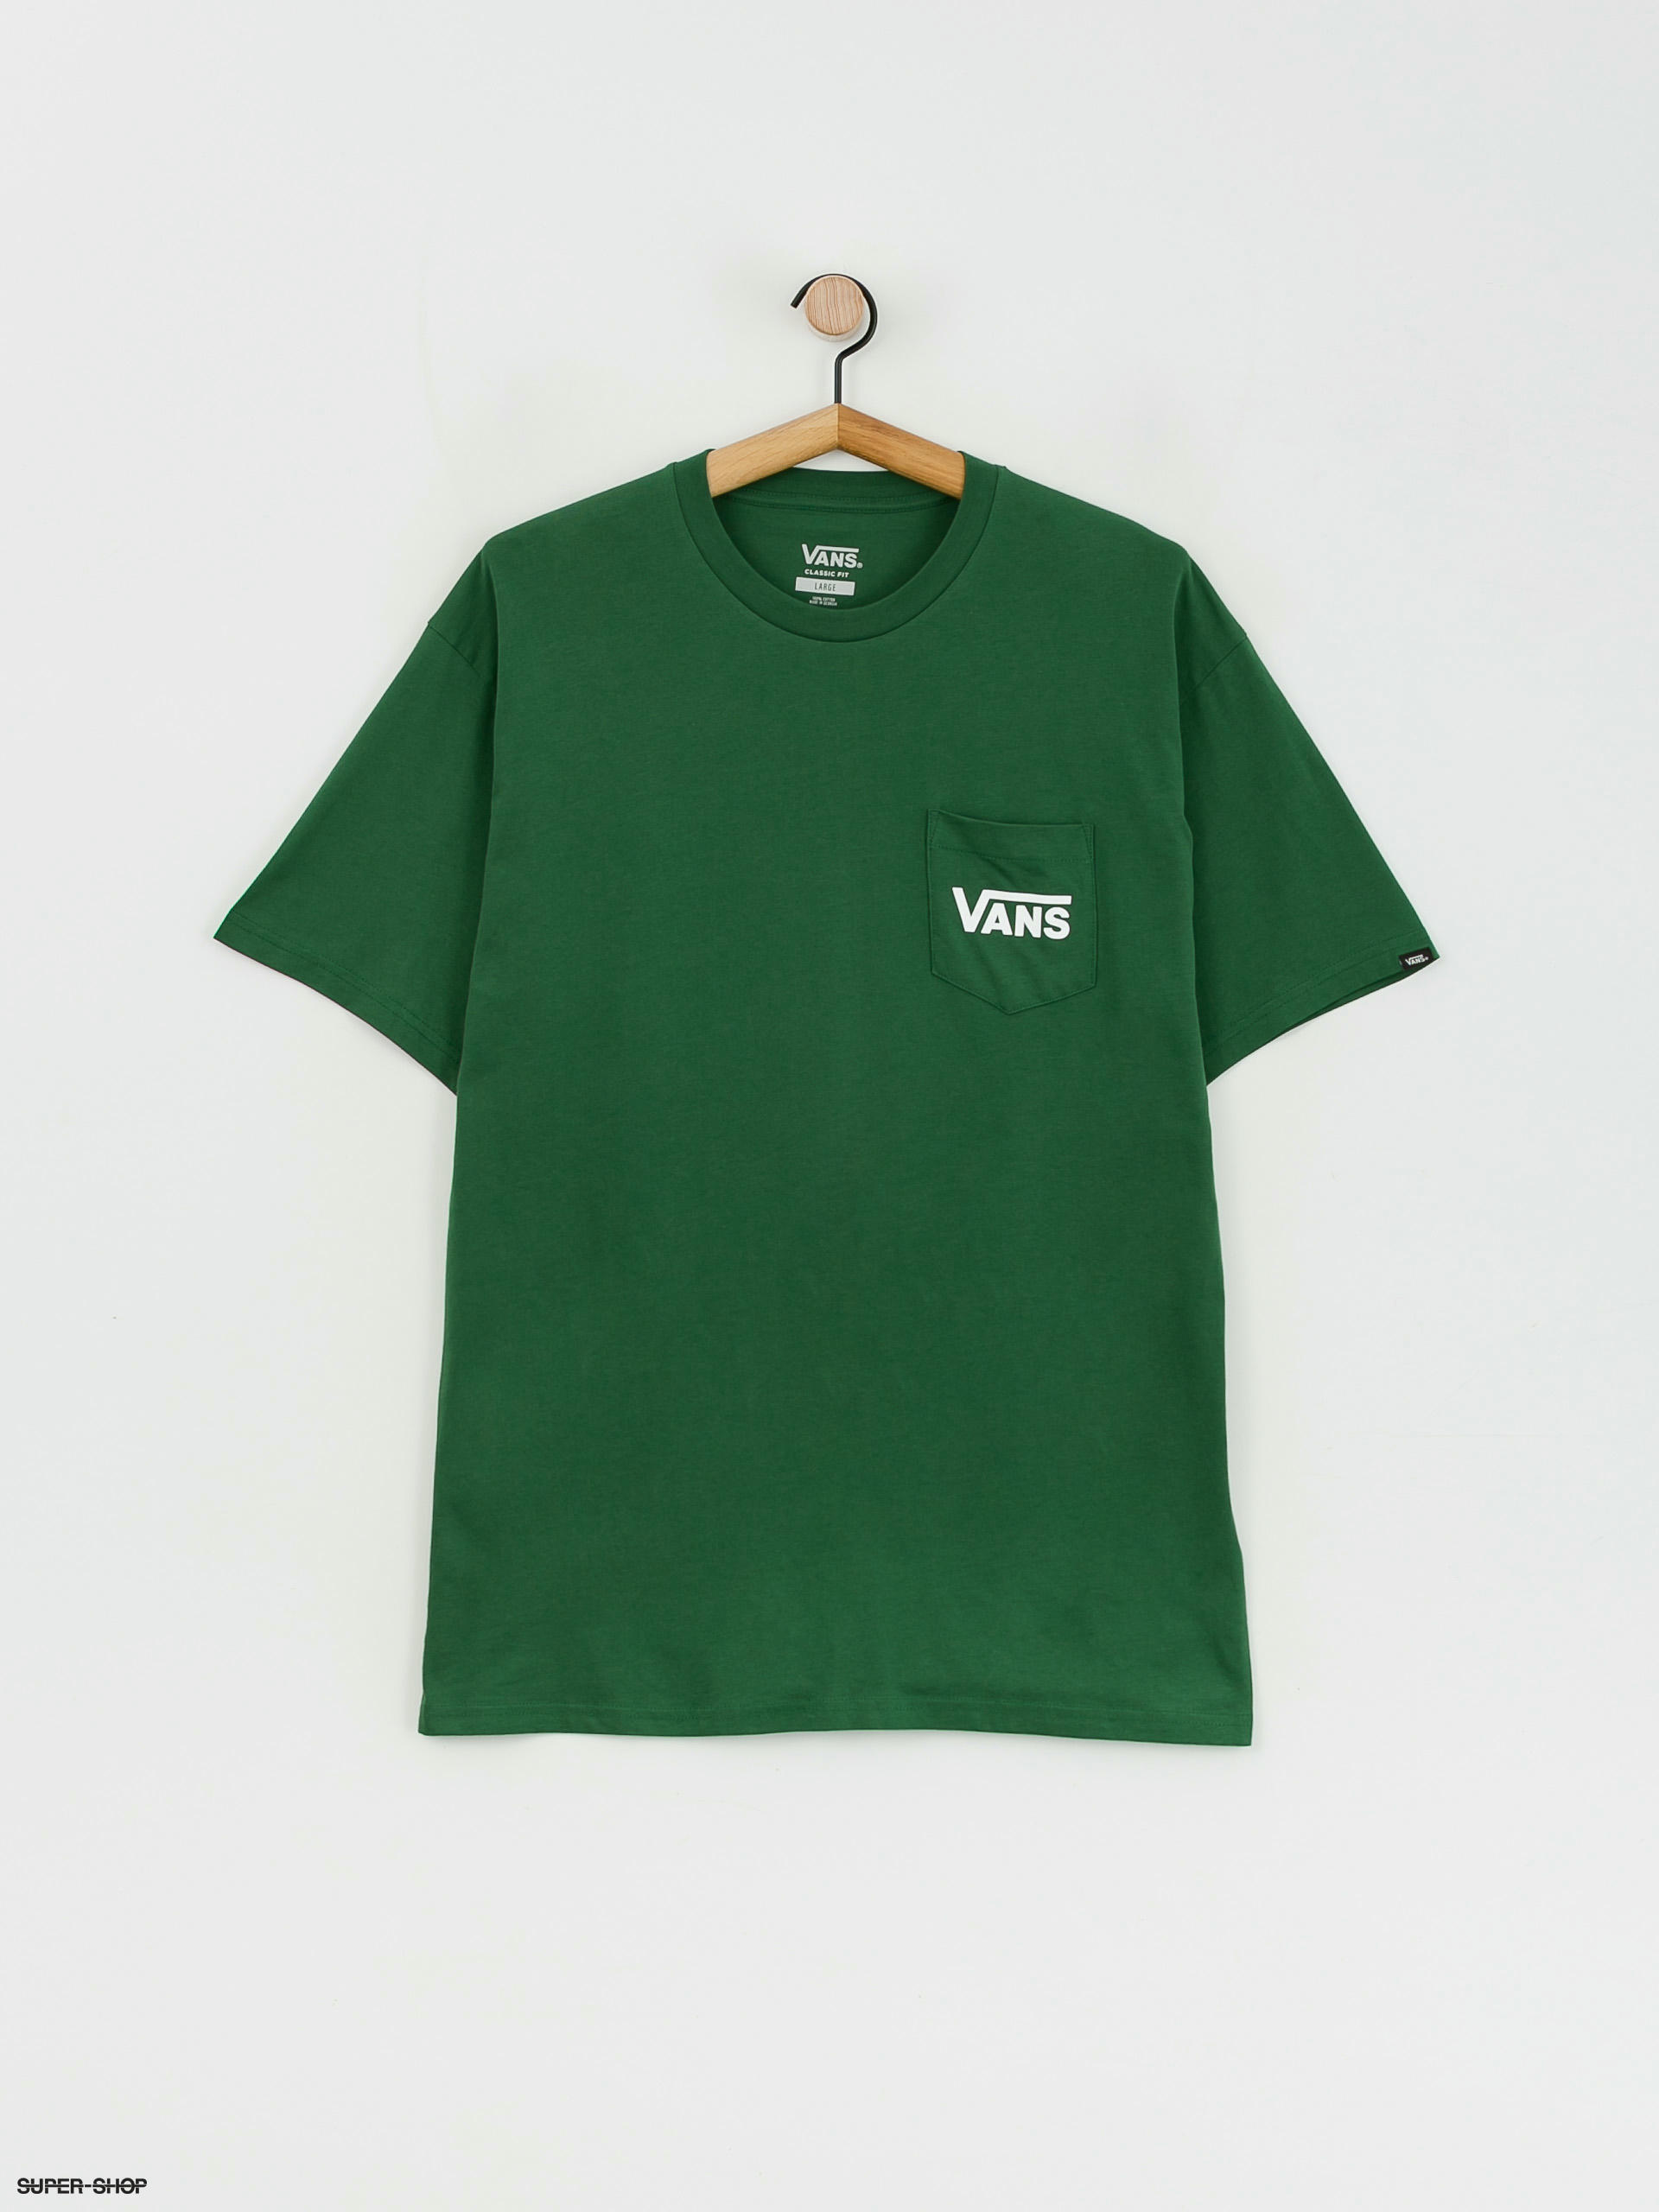 (eden/white) Back Vans Style T-shirt 76